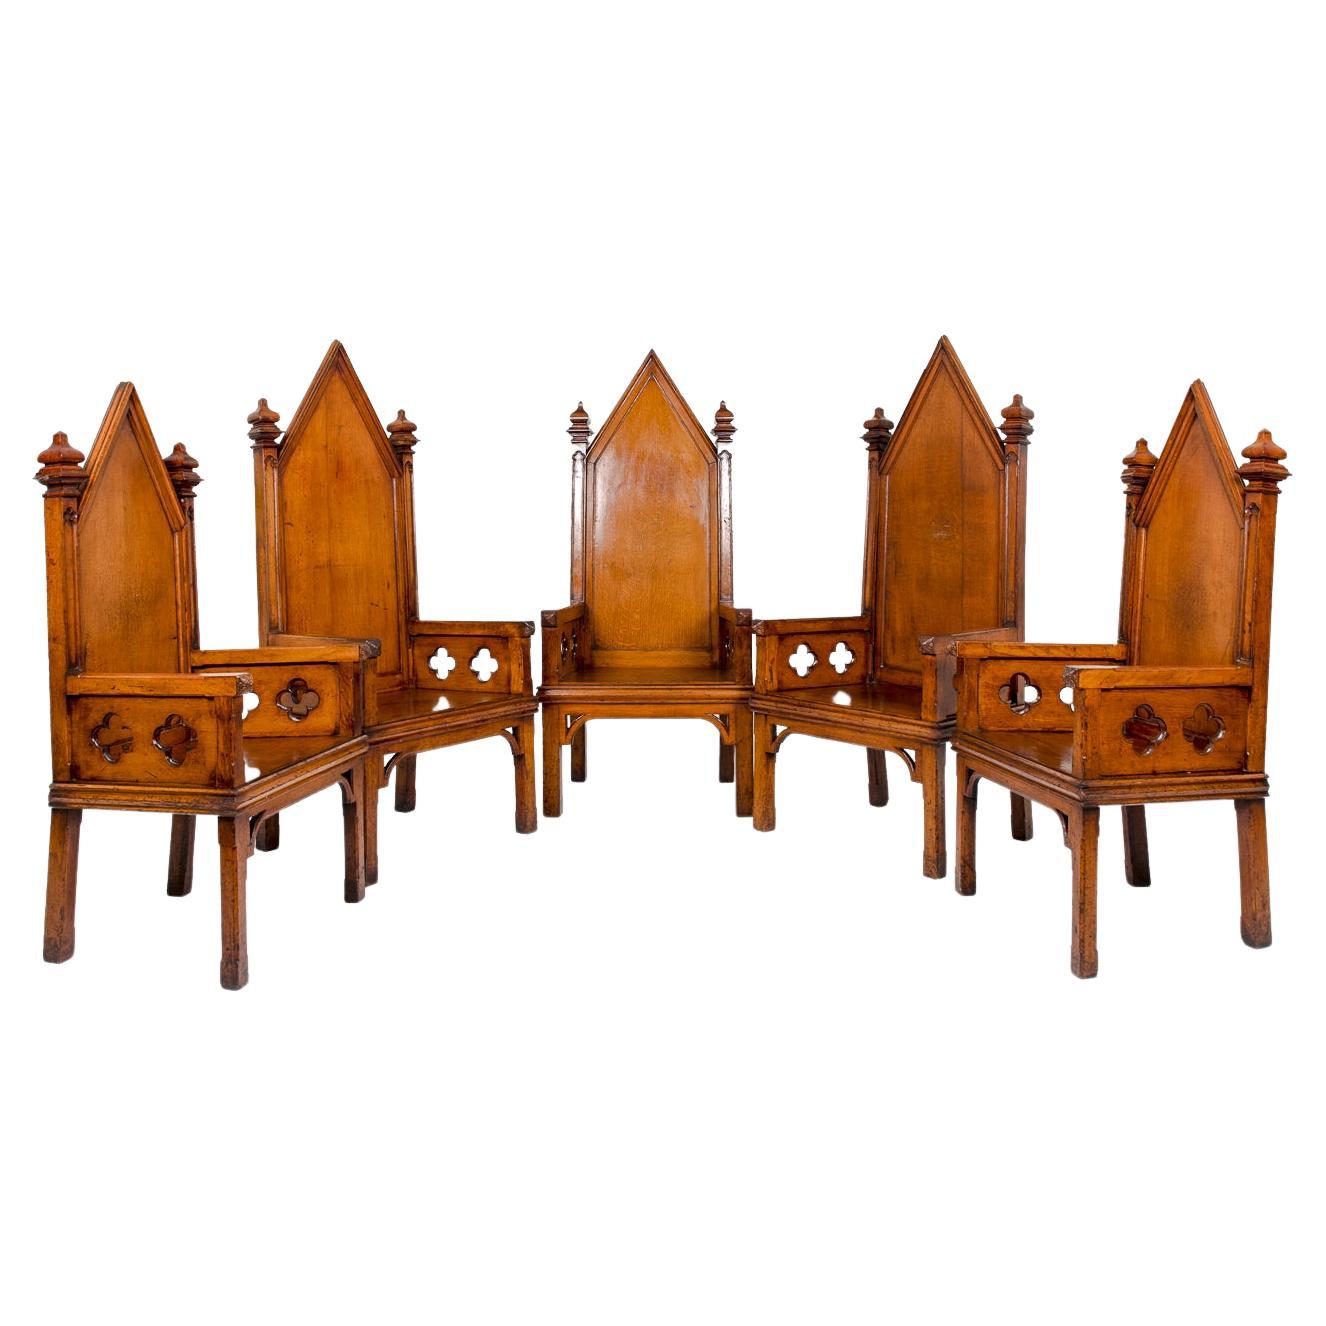 Ensemble de six fauteuils trônes maçonniques en chêne, vers 1880